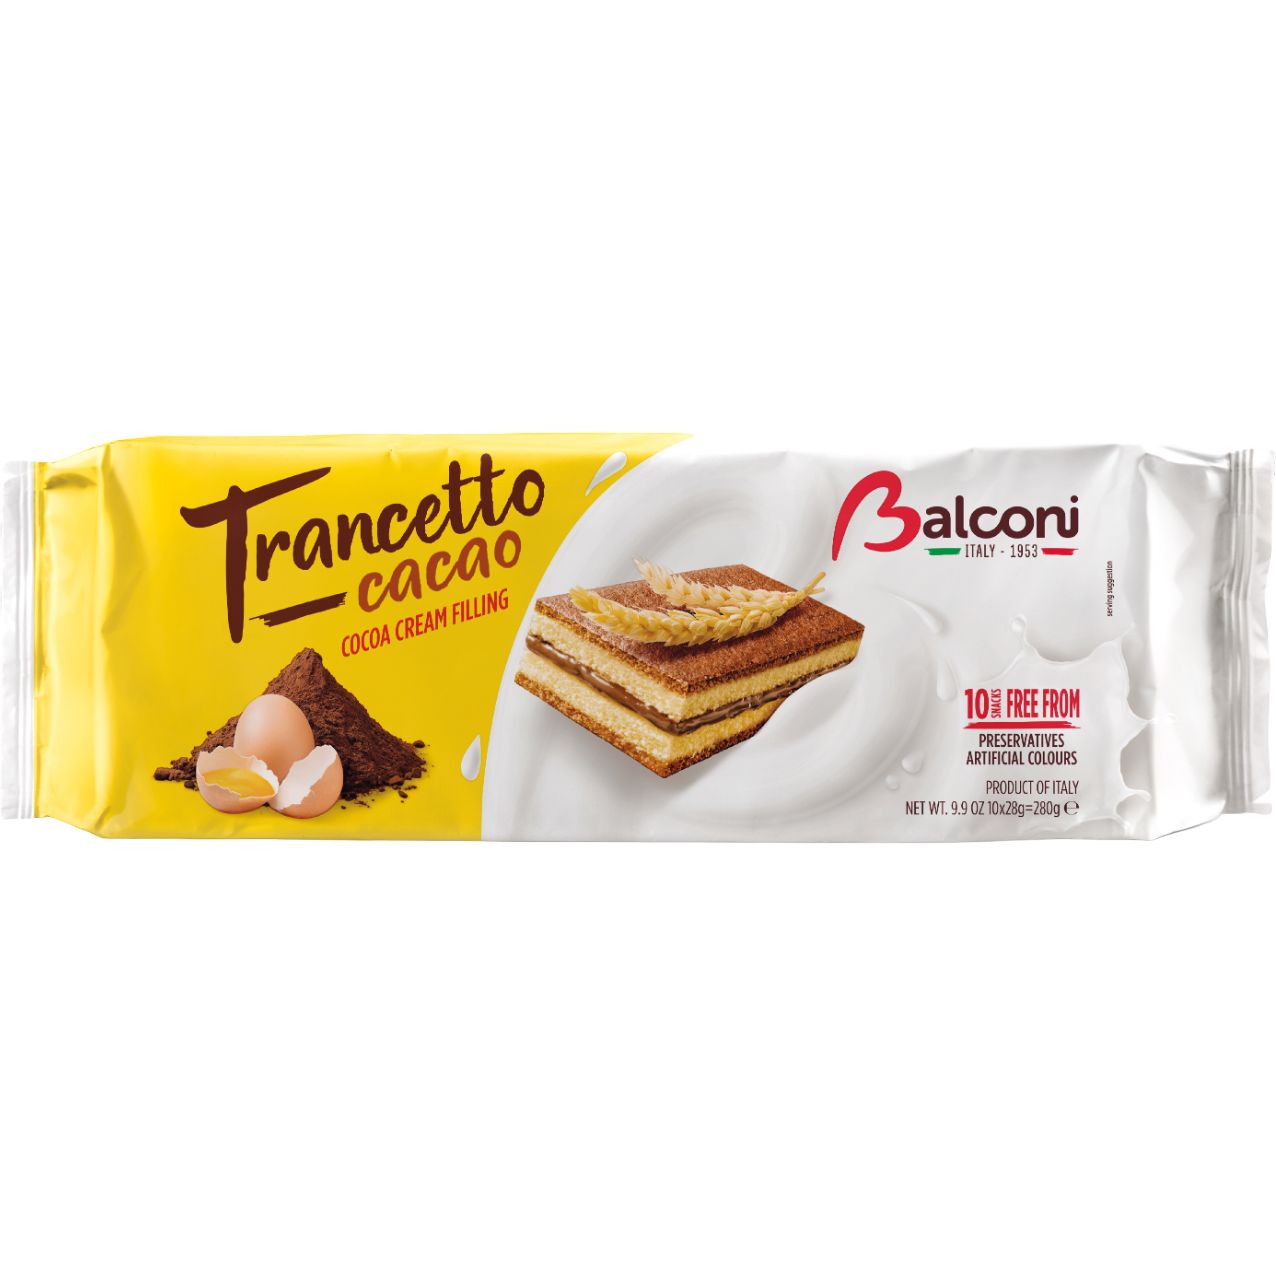 Мини бисквиты Balconi Trancetto cacao 280 г - фото 1